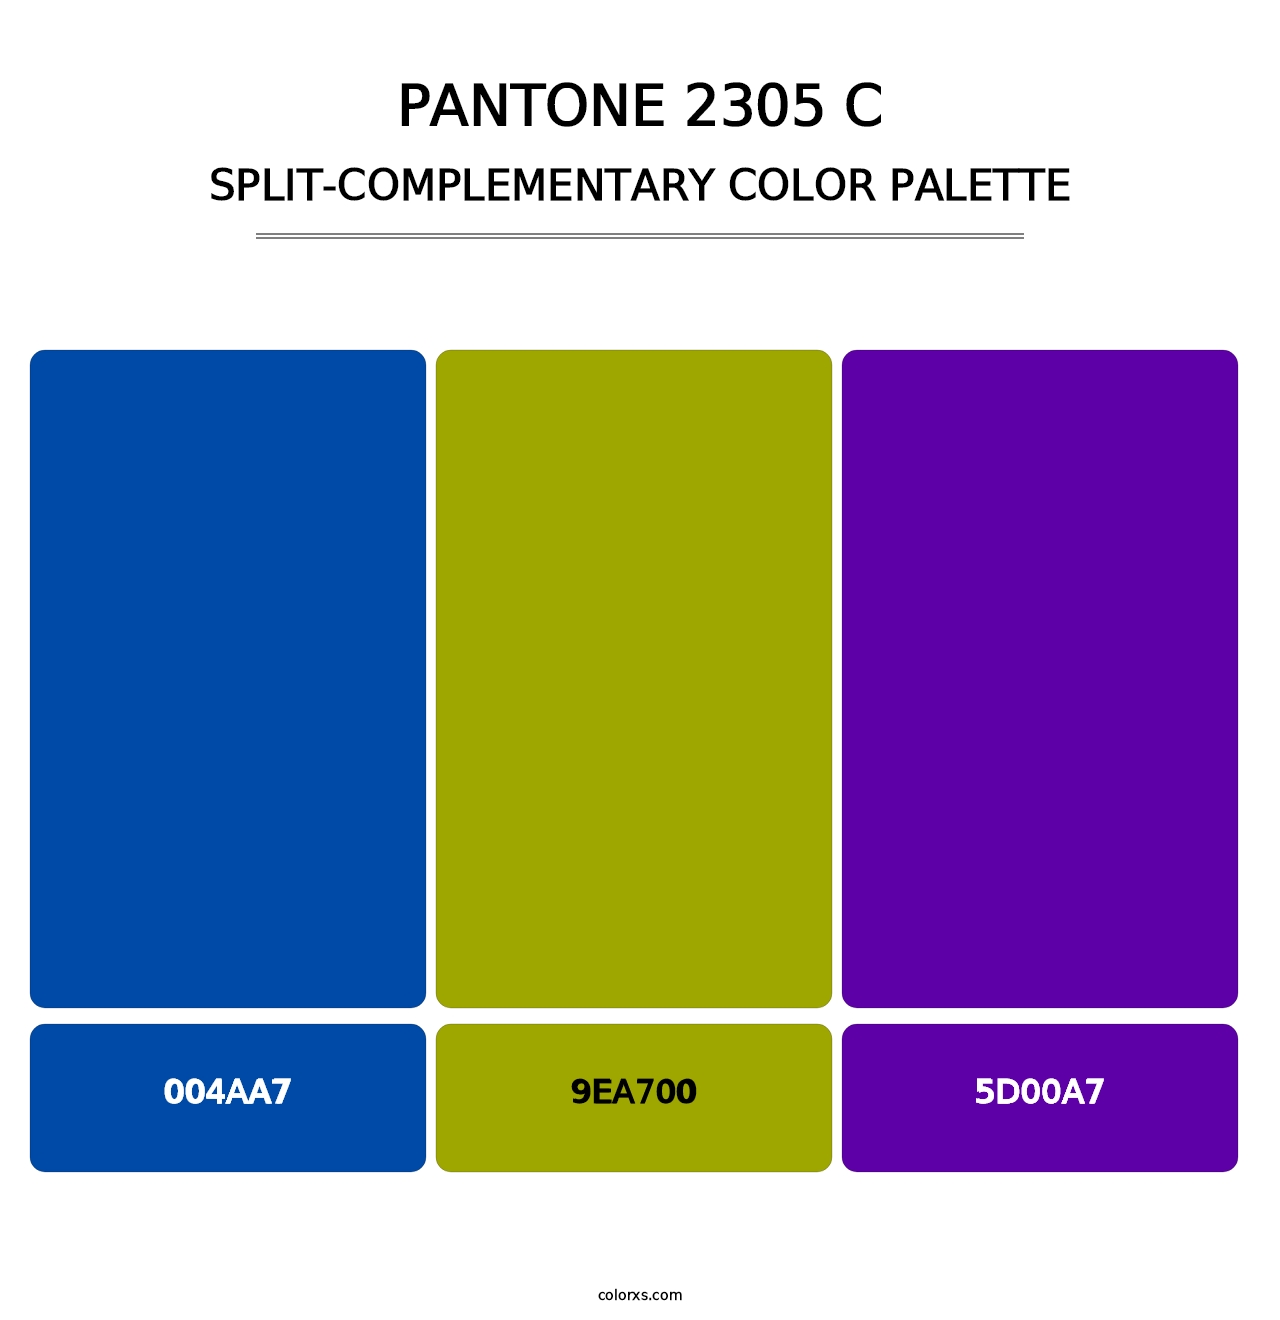 PANTONE 2305 C - Split-Complementary Color Palette